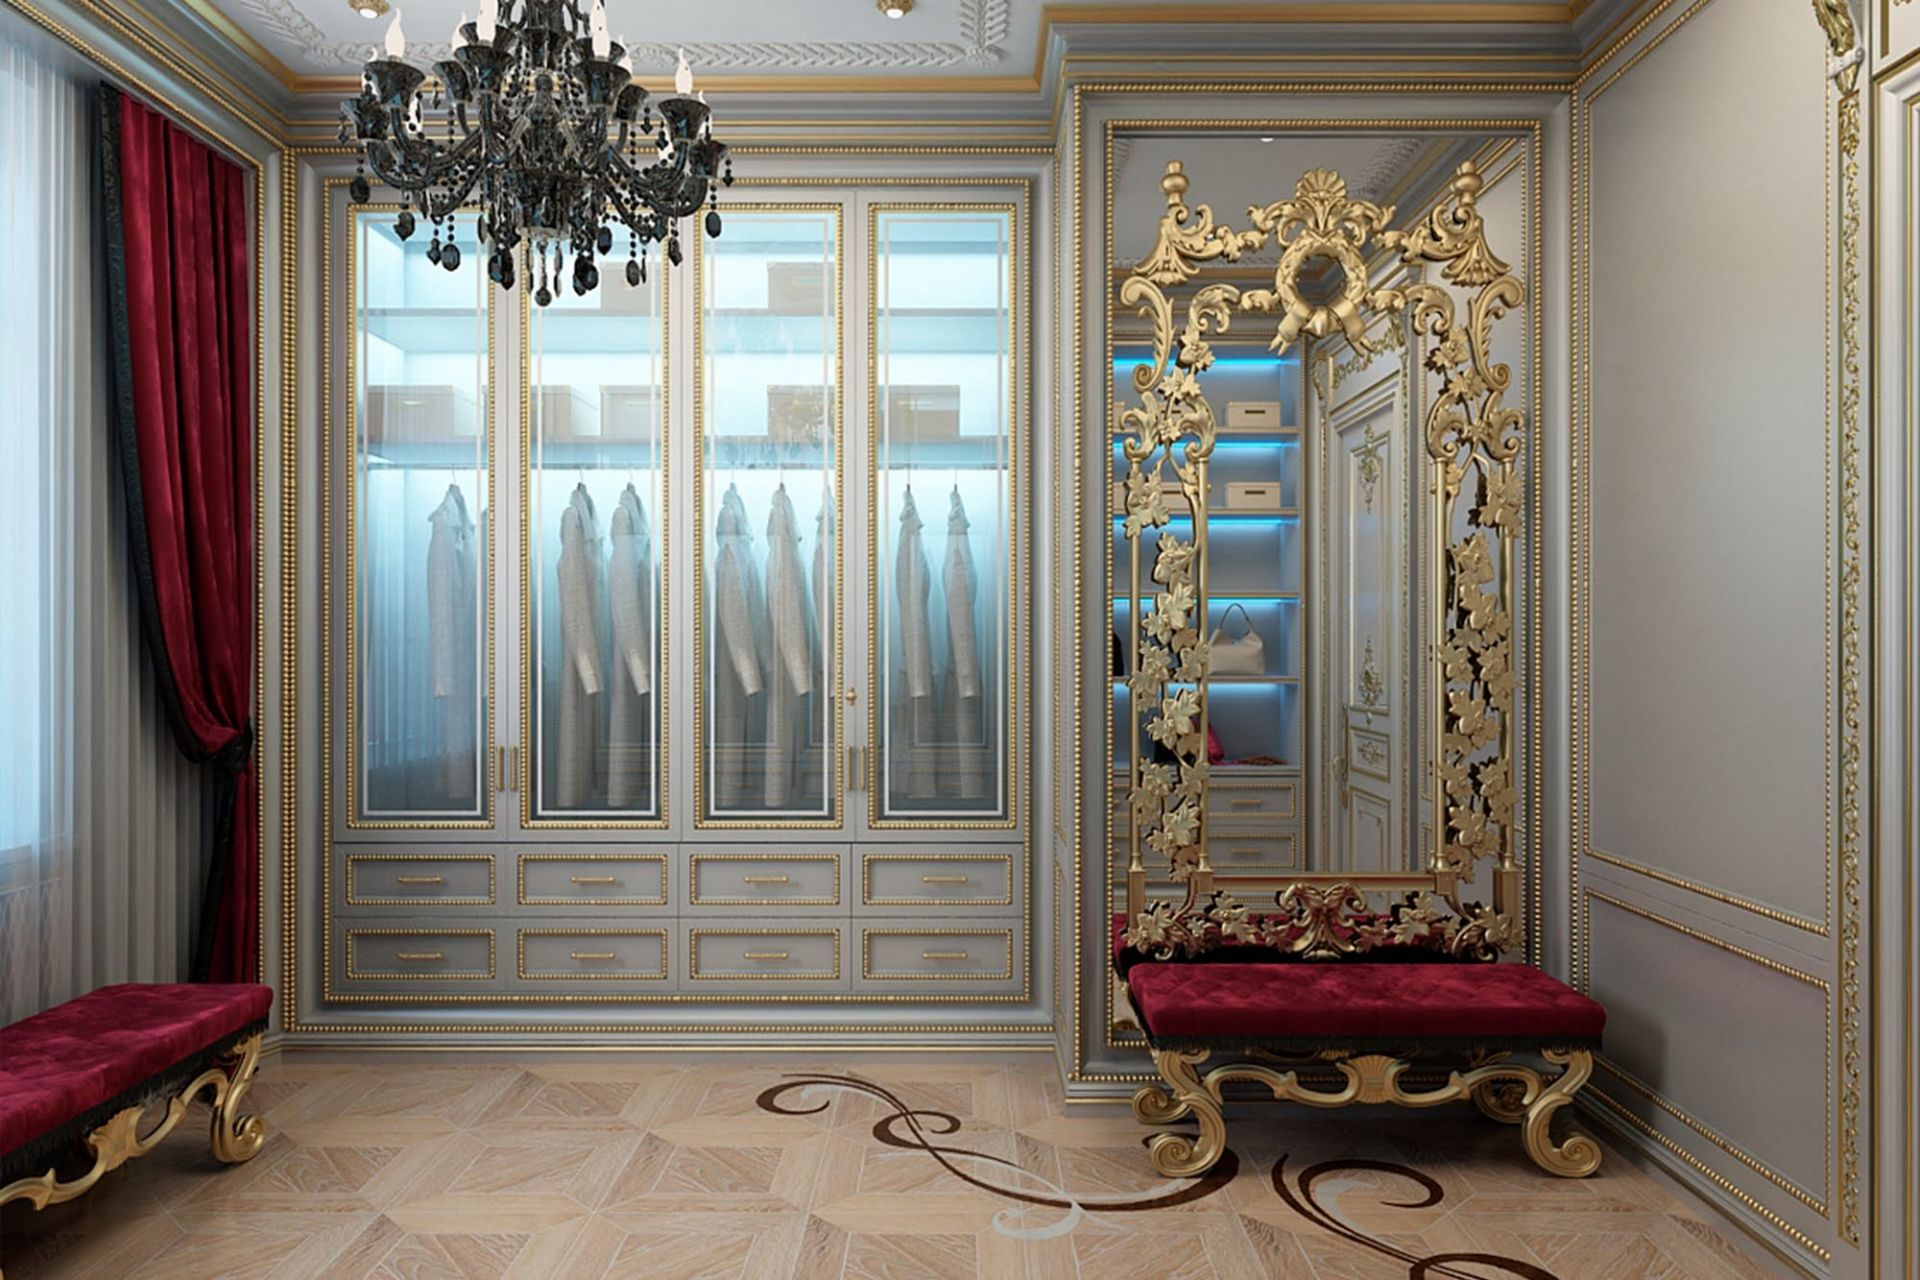 Інтер'єр гардеробної кімнати з елементами Ампіру